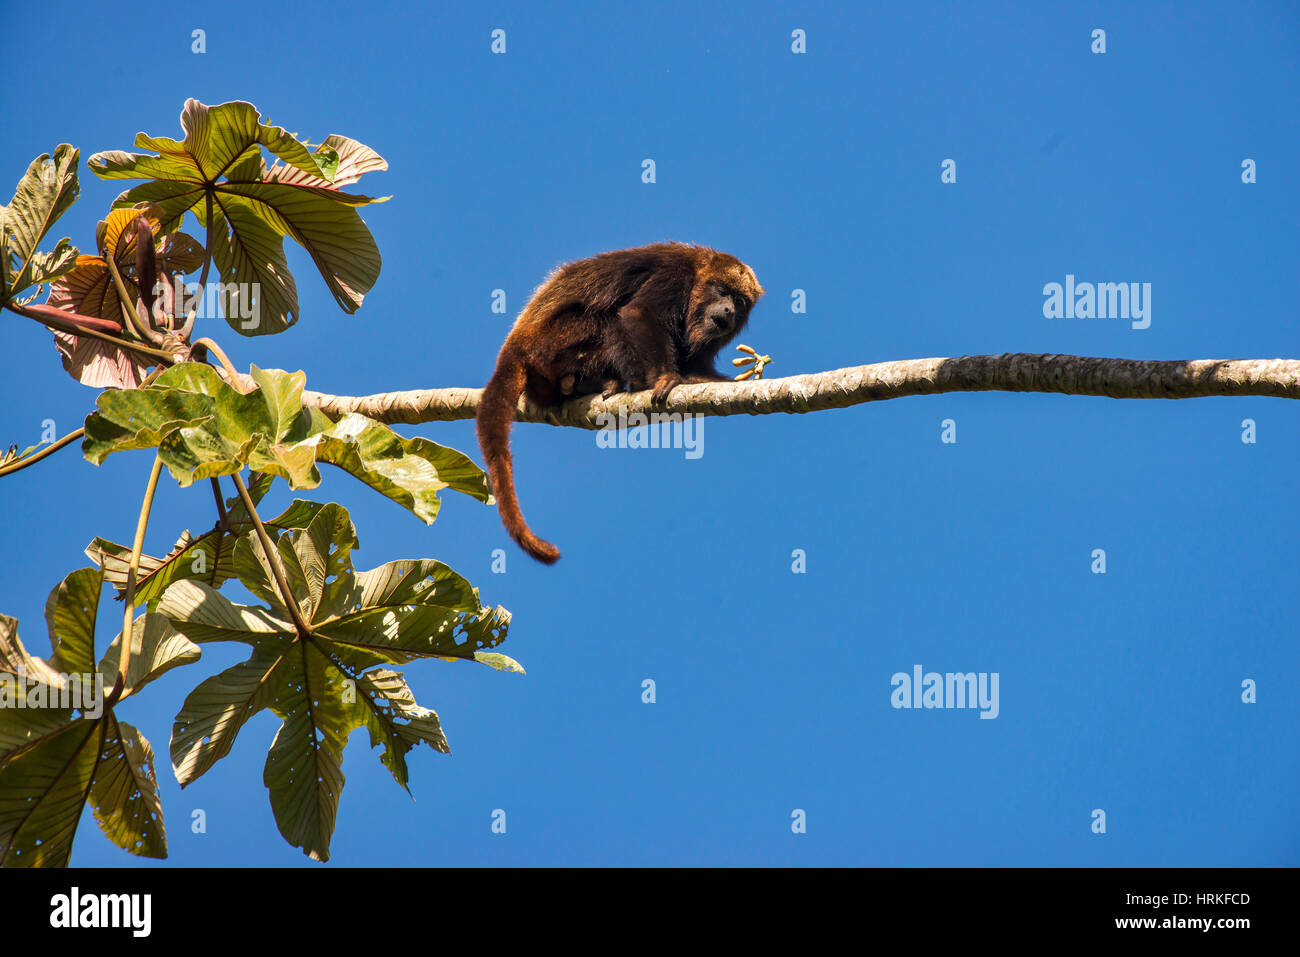 Mono aullador pardo (Alouatta guariba), fotografiado en Santa María de Jetibá, Espírito Santo, Brasil. Bioma del bosque atlántico. Animal salvaje. Foto de stock